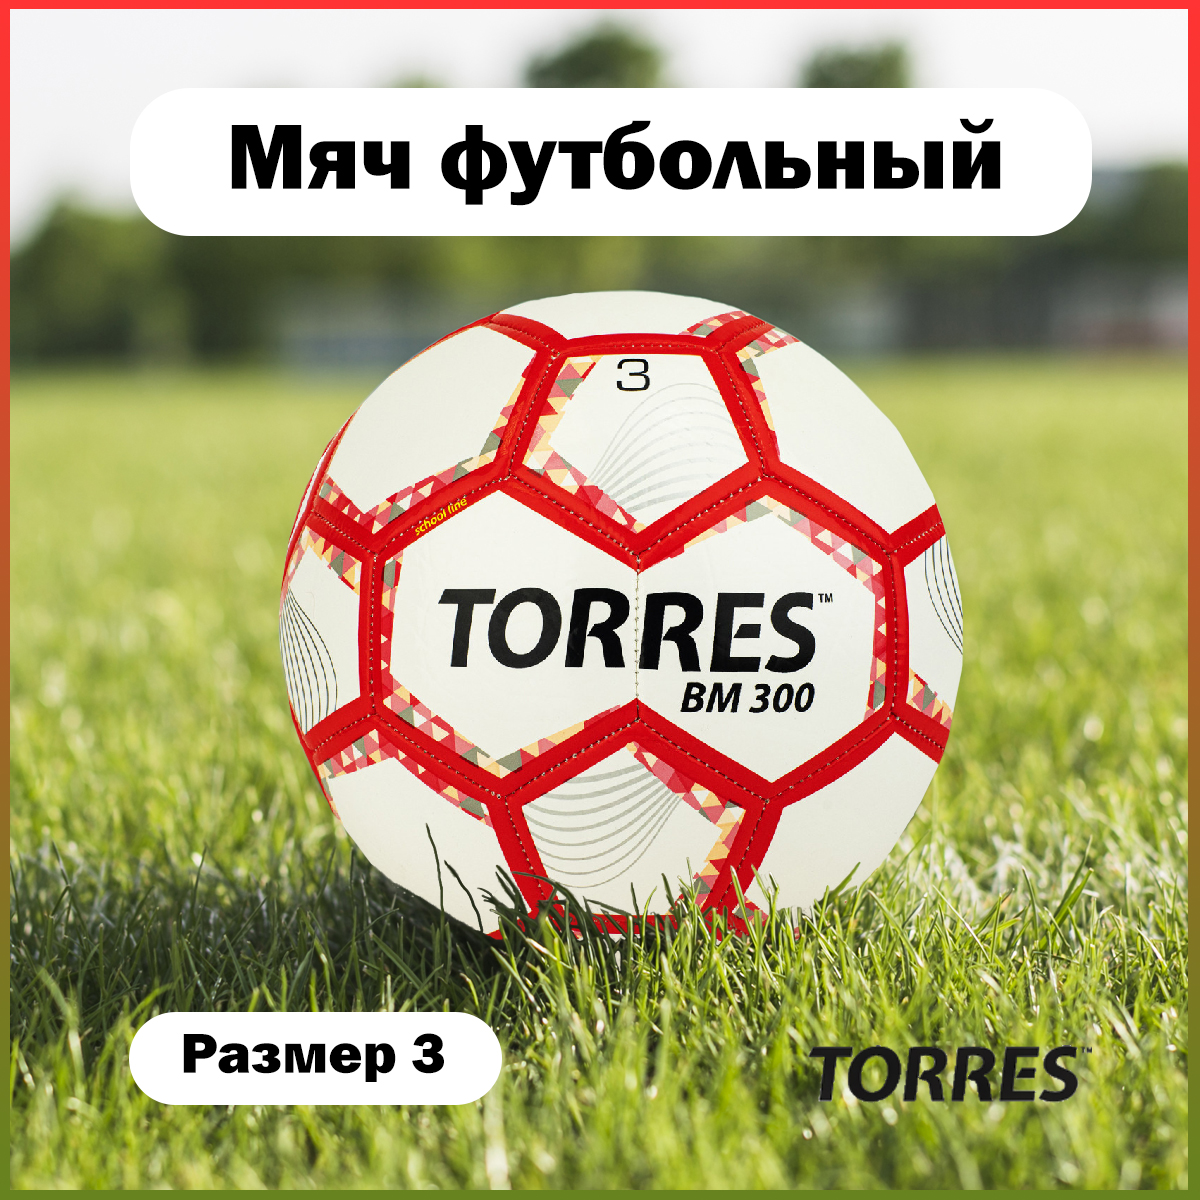 Футбольный мяч Torres BM 300 №3 white/red - купить в Дельта-фитнес.ру, цена на Мегамаркет